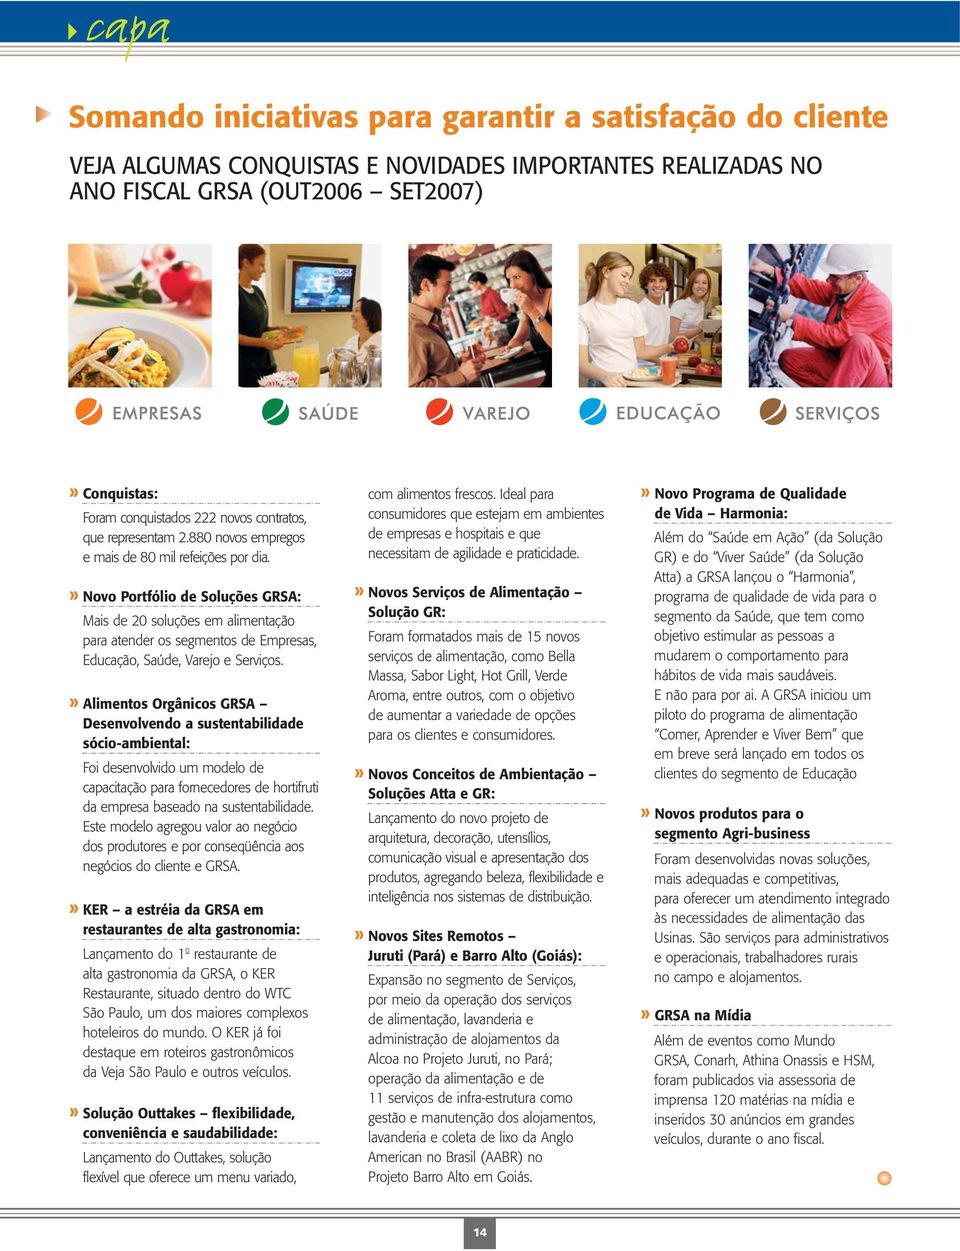 » Novo Portfólio de Soluções GRSA: Mais de 20 soluções em alimentação para atender os segmentos de Empresas, Educação, Saúde, Varejo e Serviços.